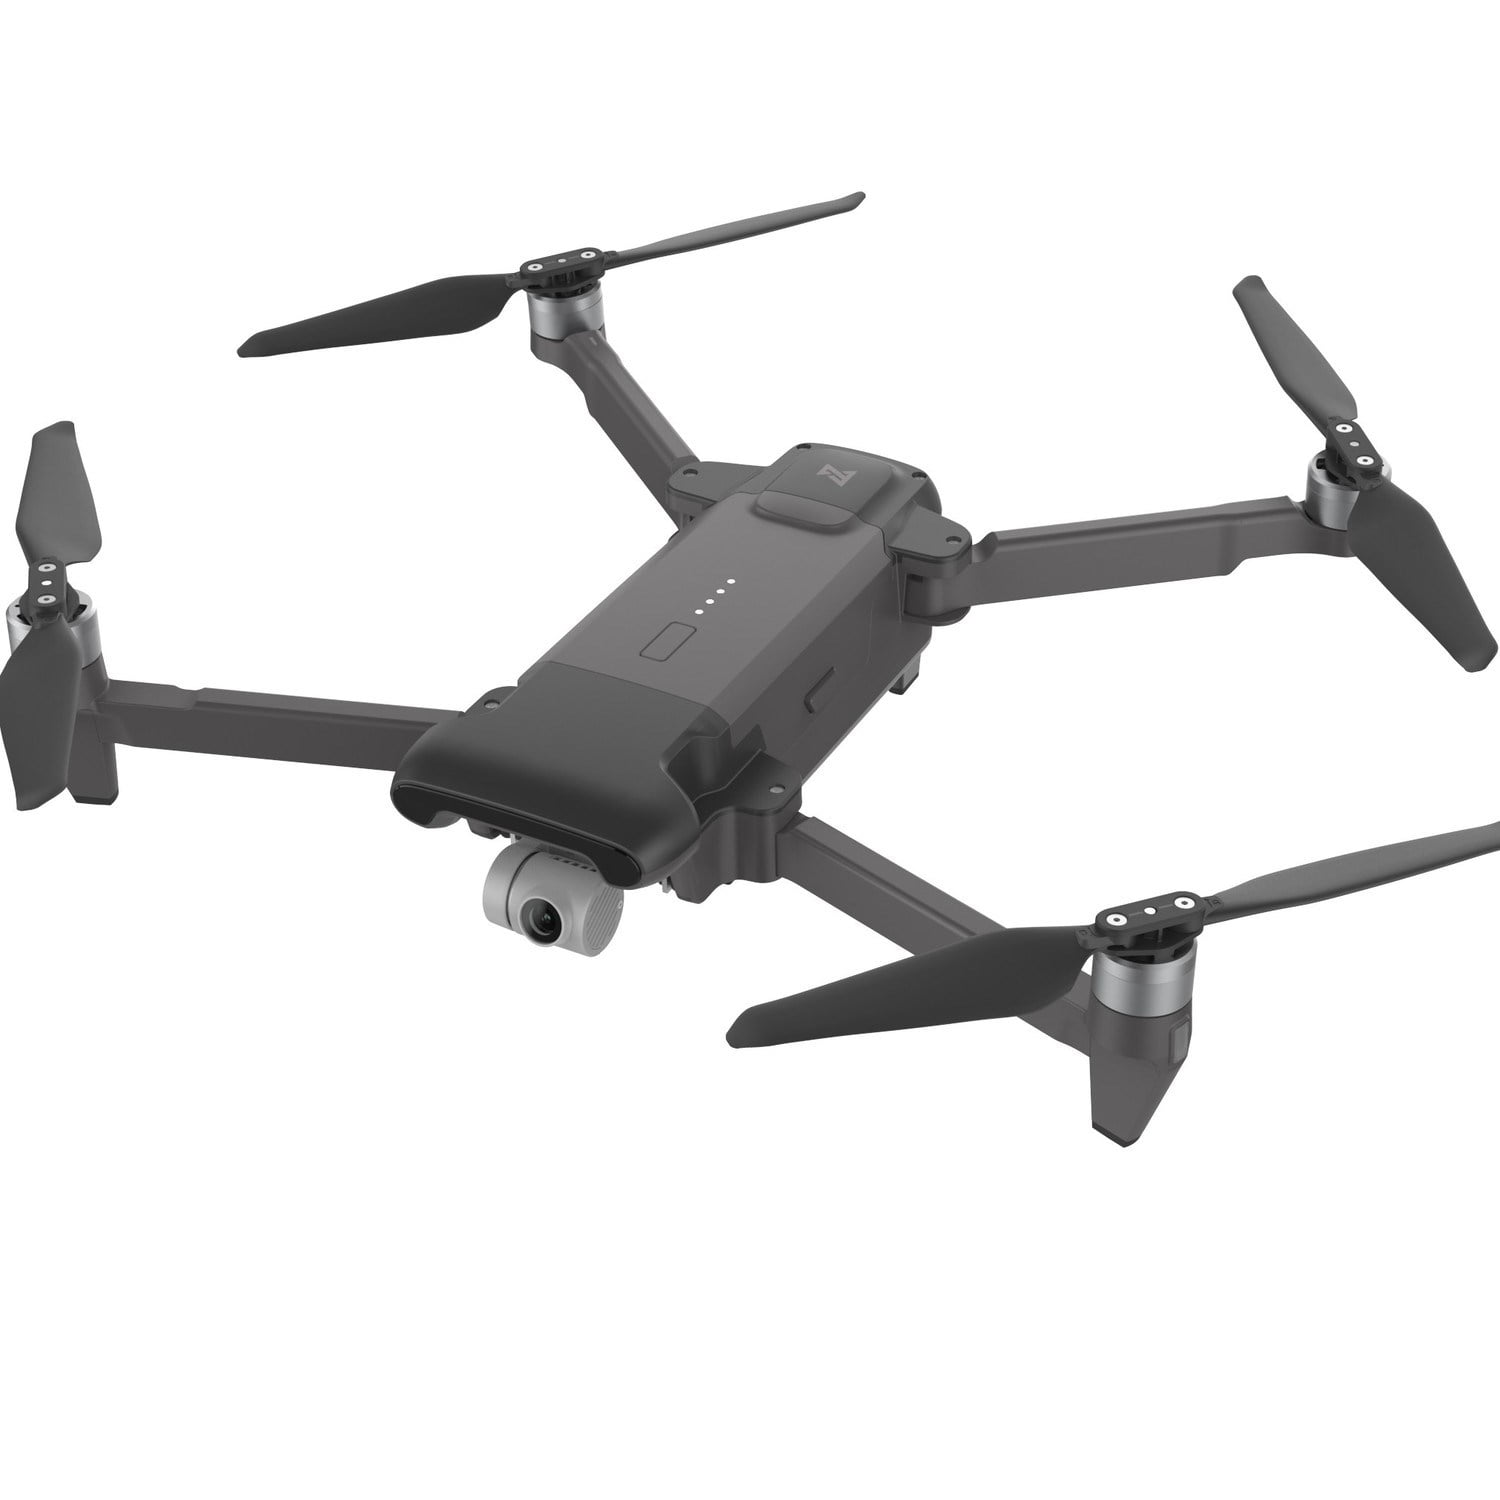 son los mejores drones largo alcance? Aquí están.